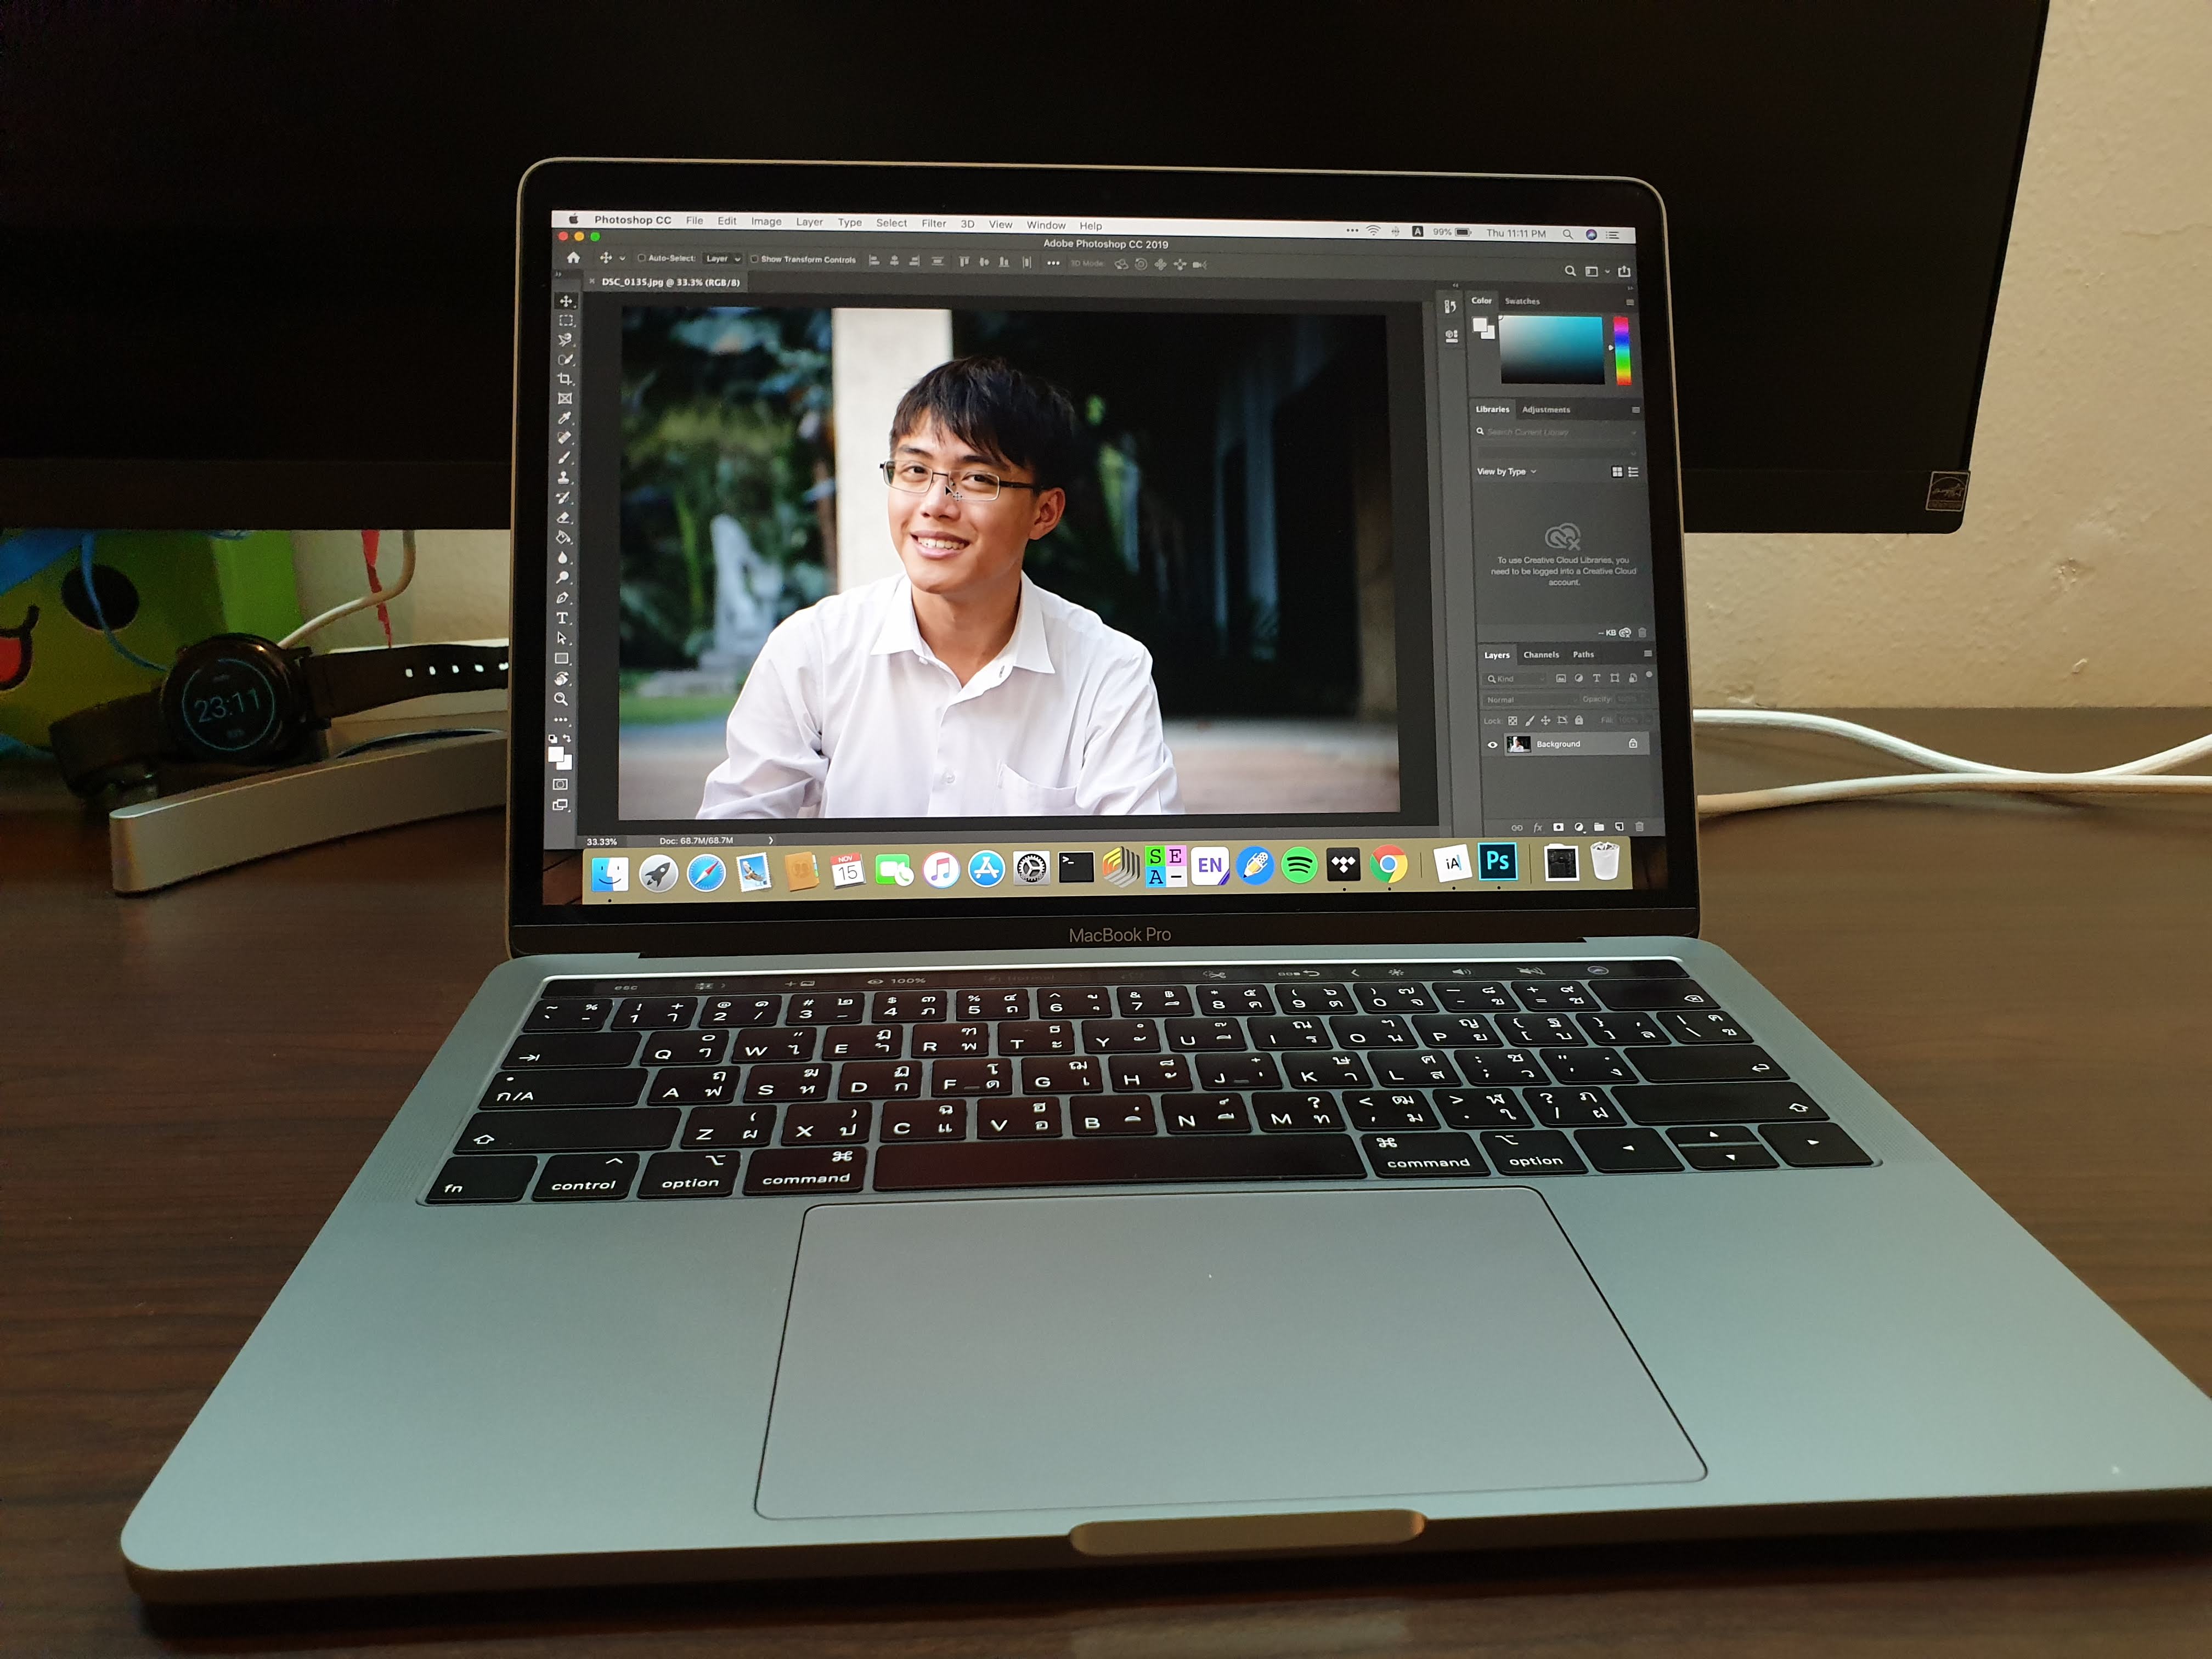 MacBook Pro 13-inch 2018 running Photoshop